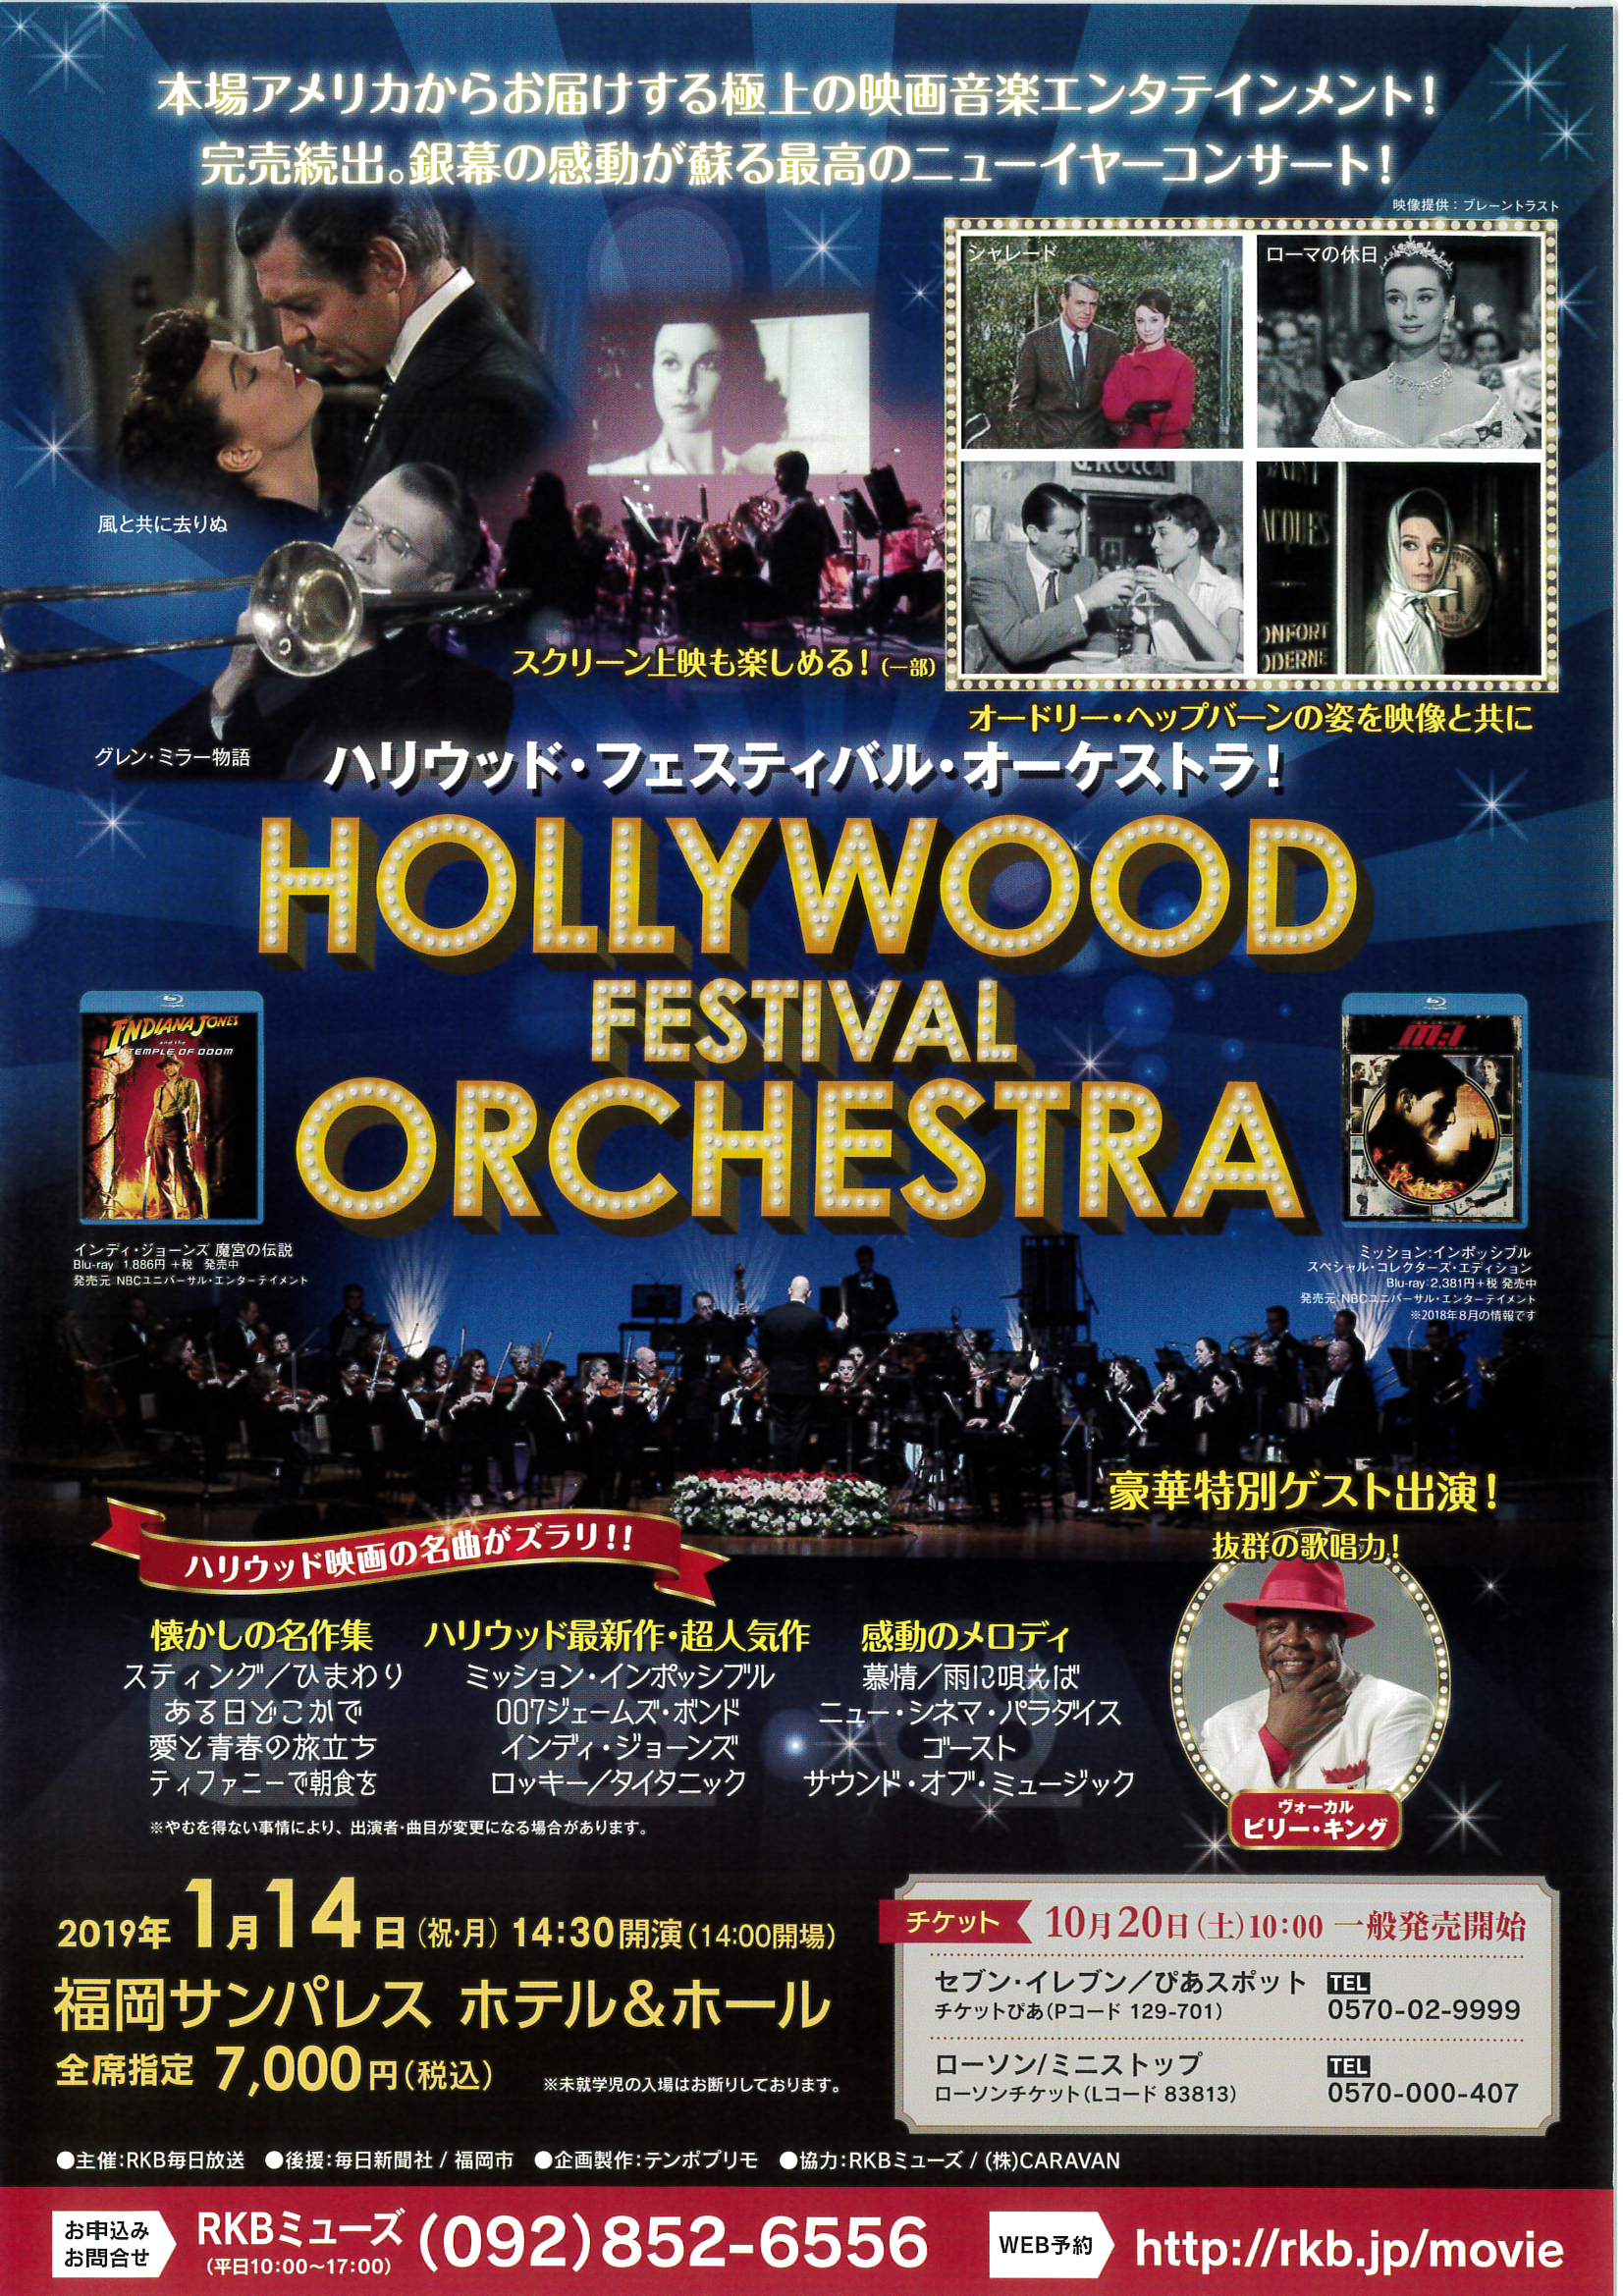 ハリウッド フェスティバル オーケストラ 福岡サンパレス ホテル ホール 19 福岡 博多の観光情報が満載 福岡市公式シティガイド よかなび